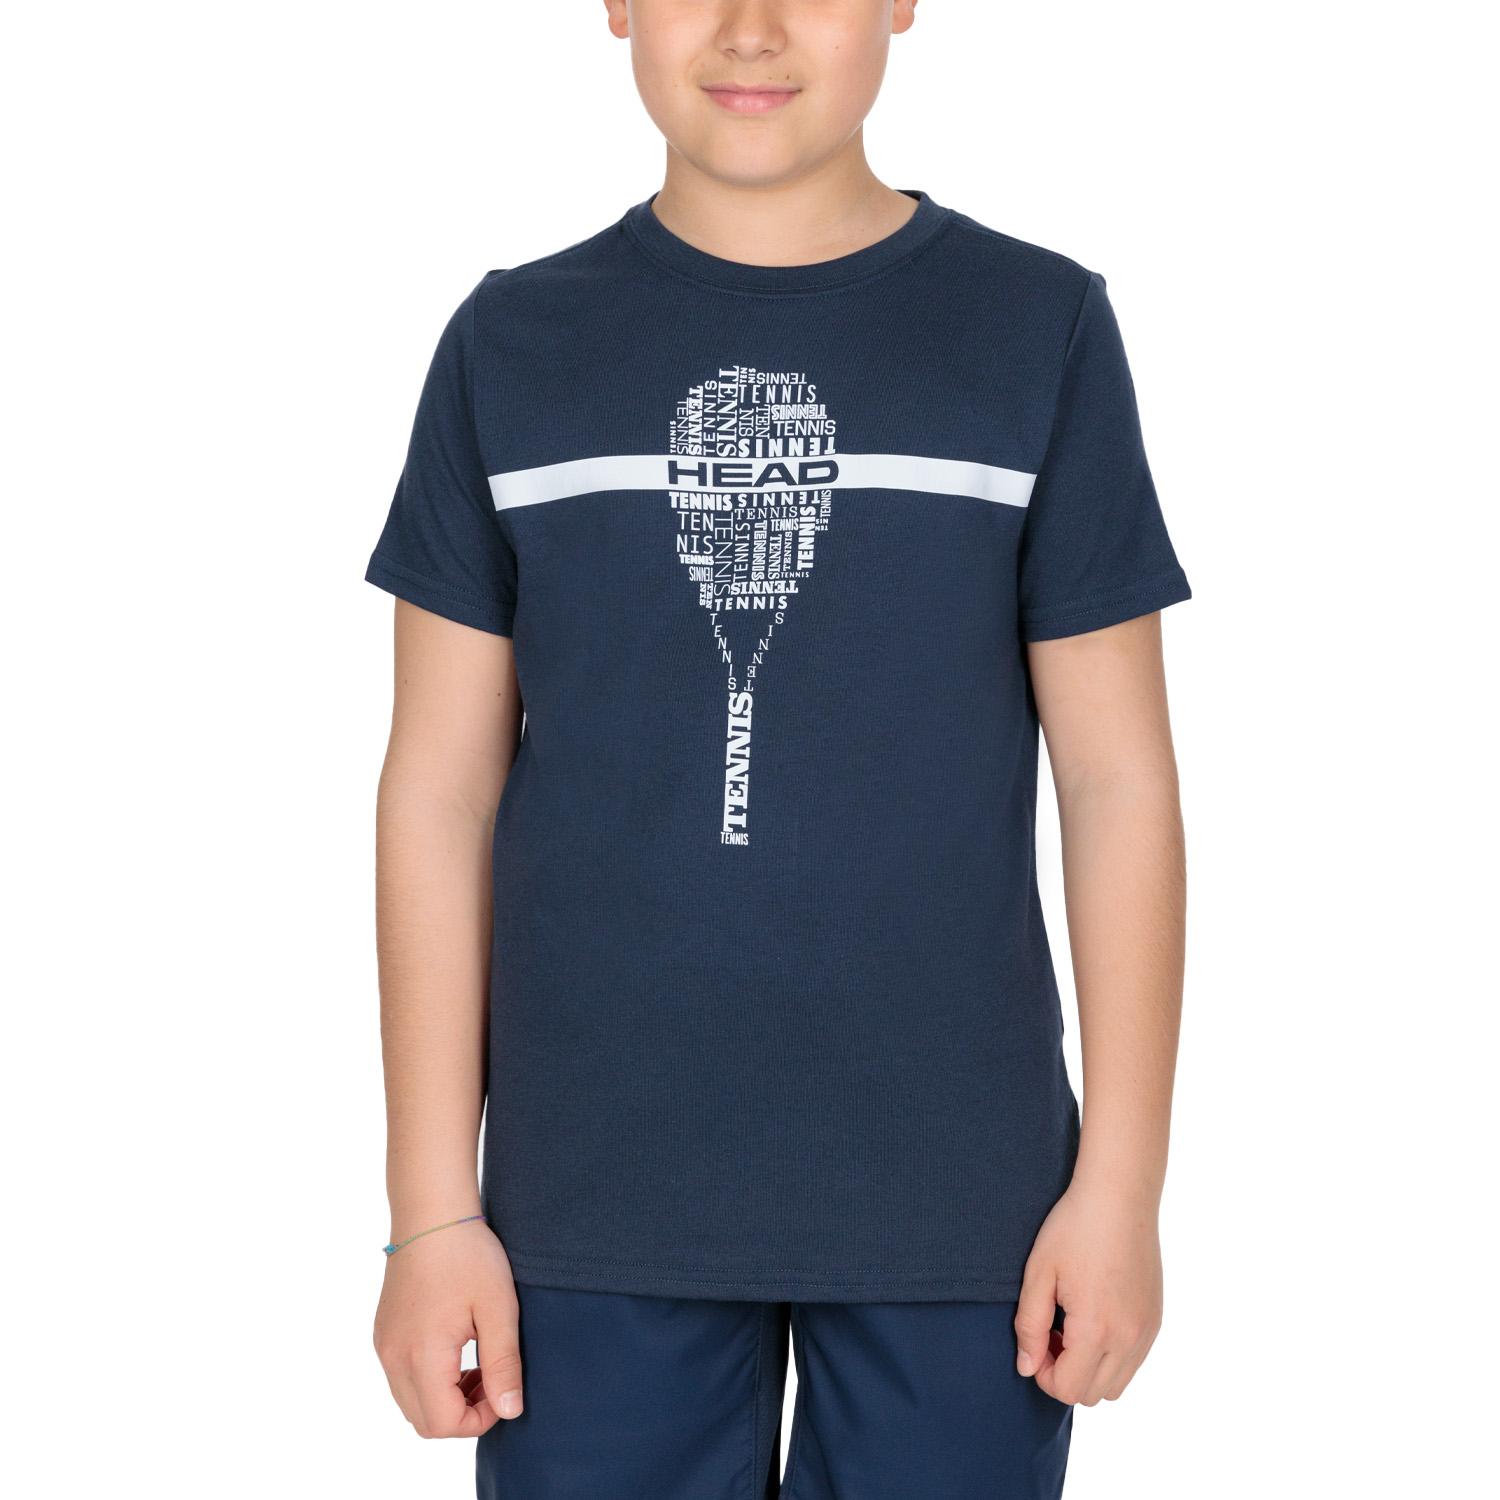 Head Typo Graphic T-Shirt Boy - Dark Blue